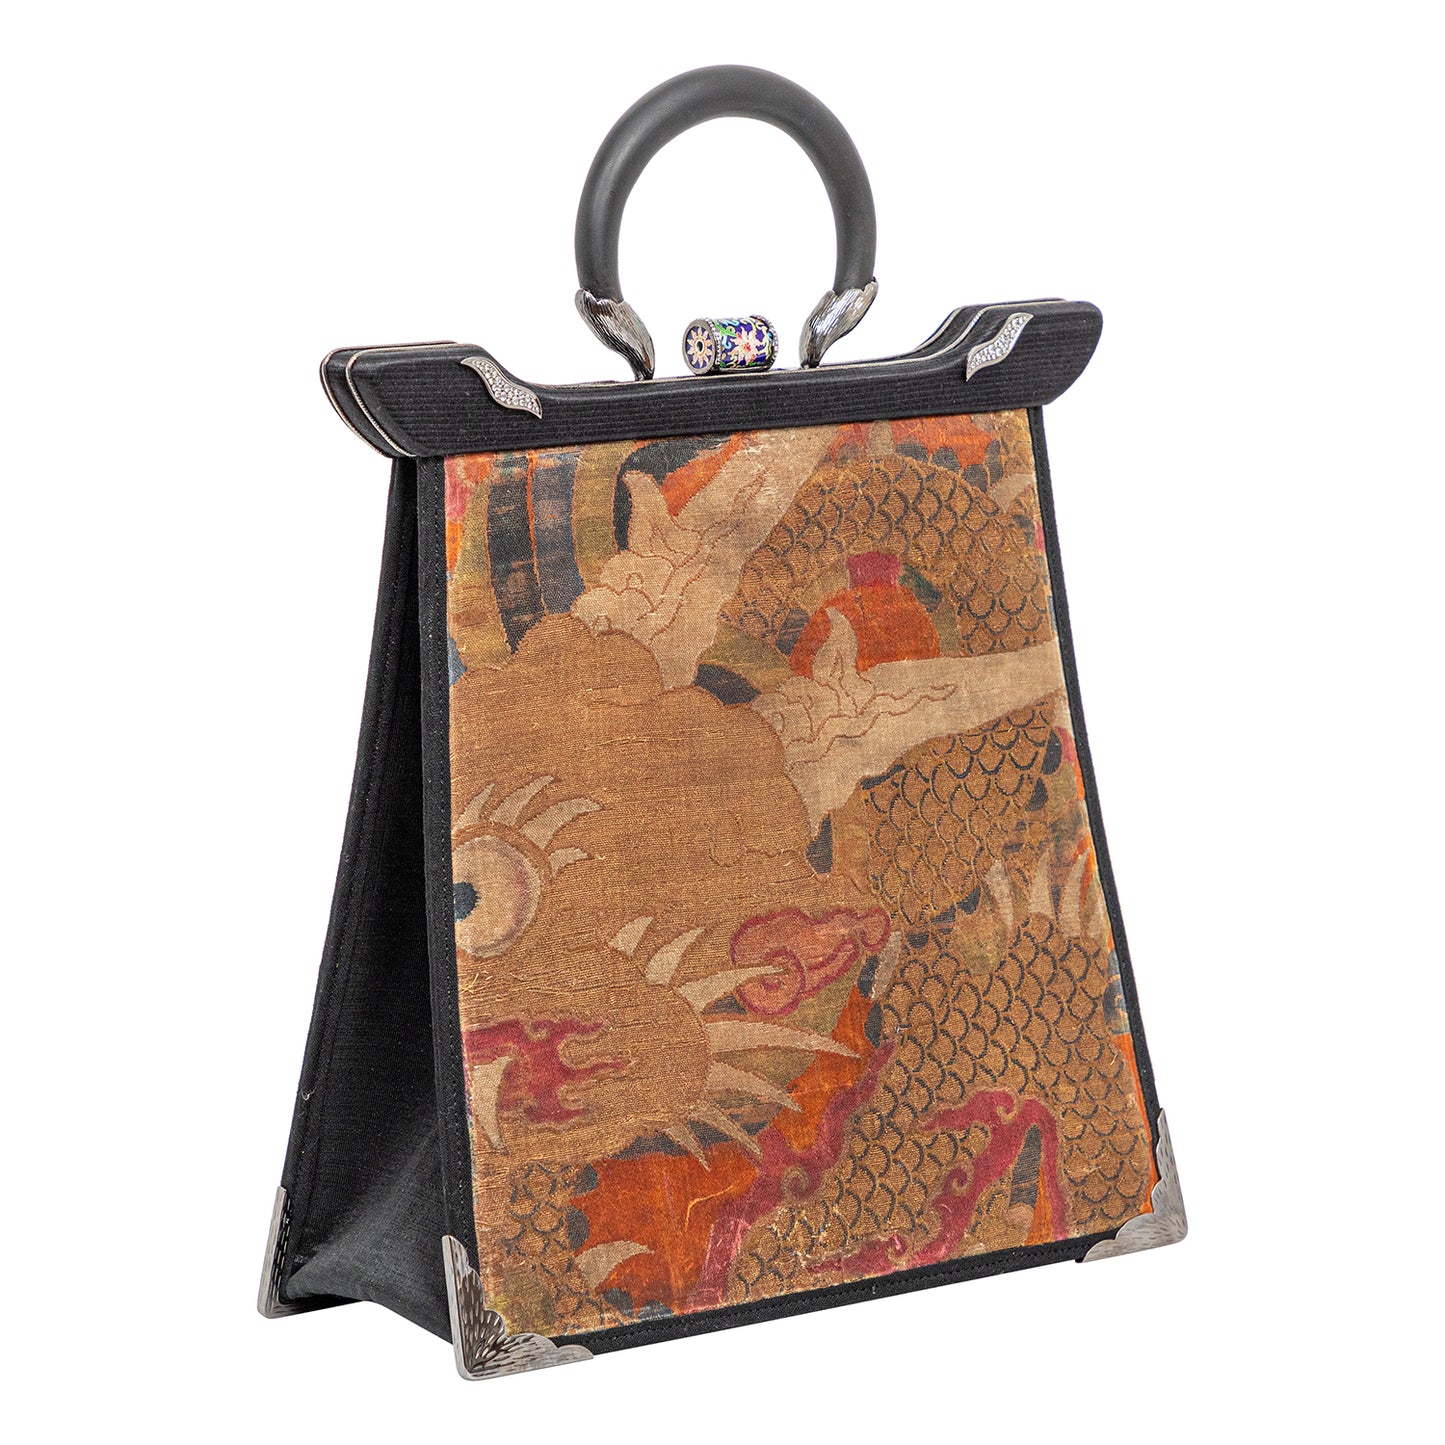 Antique Textile Handbag with Cloisonne, Diamond and Black Wood